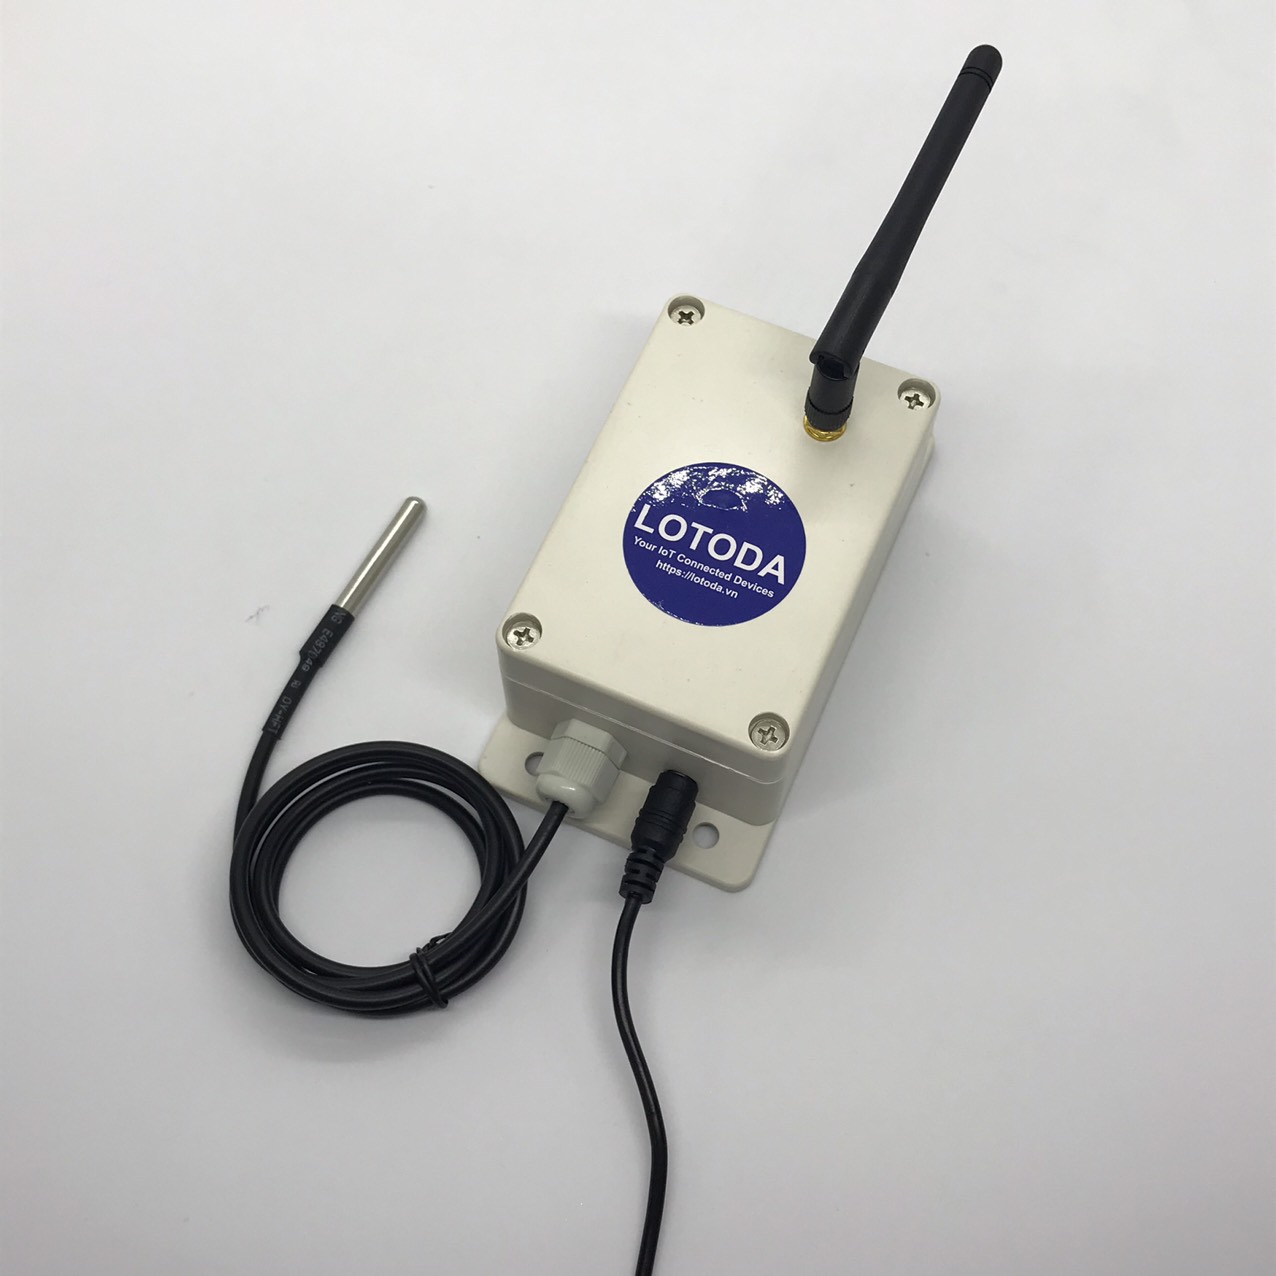 Thiết bị IoT LoRa Sensor Node - Nhiệt Độ Môi Trường Nước